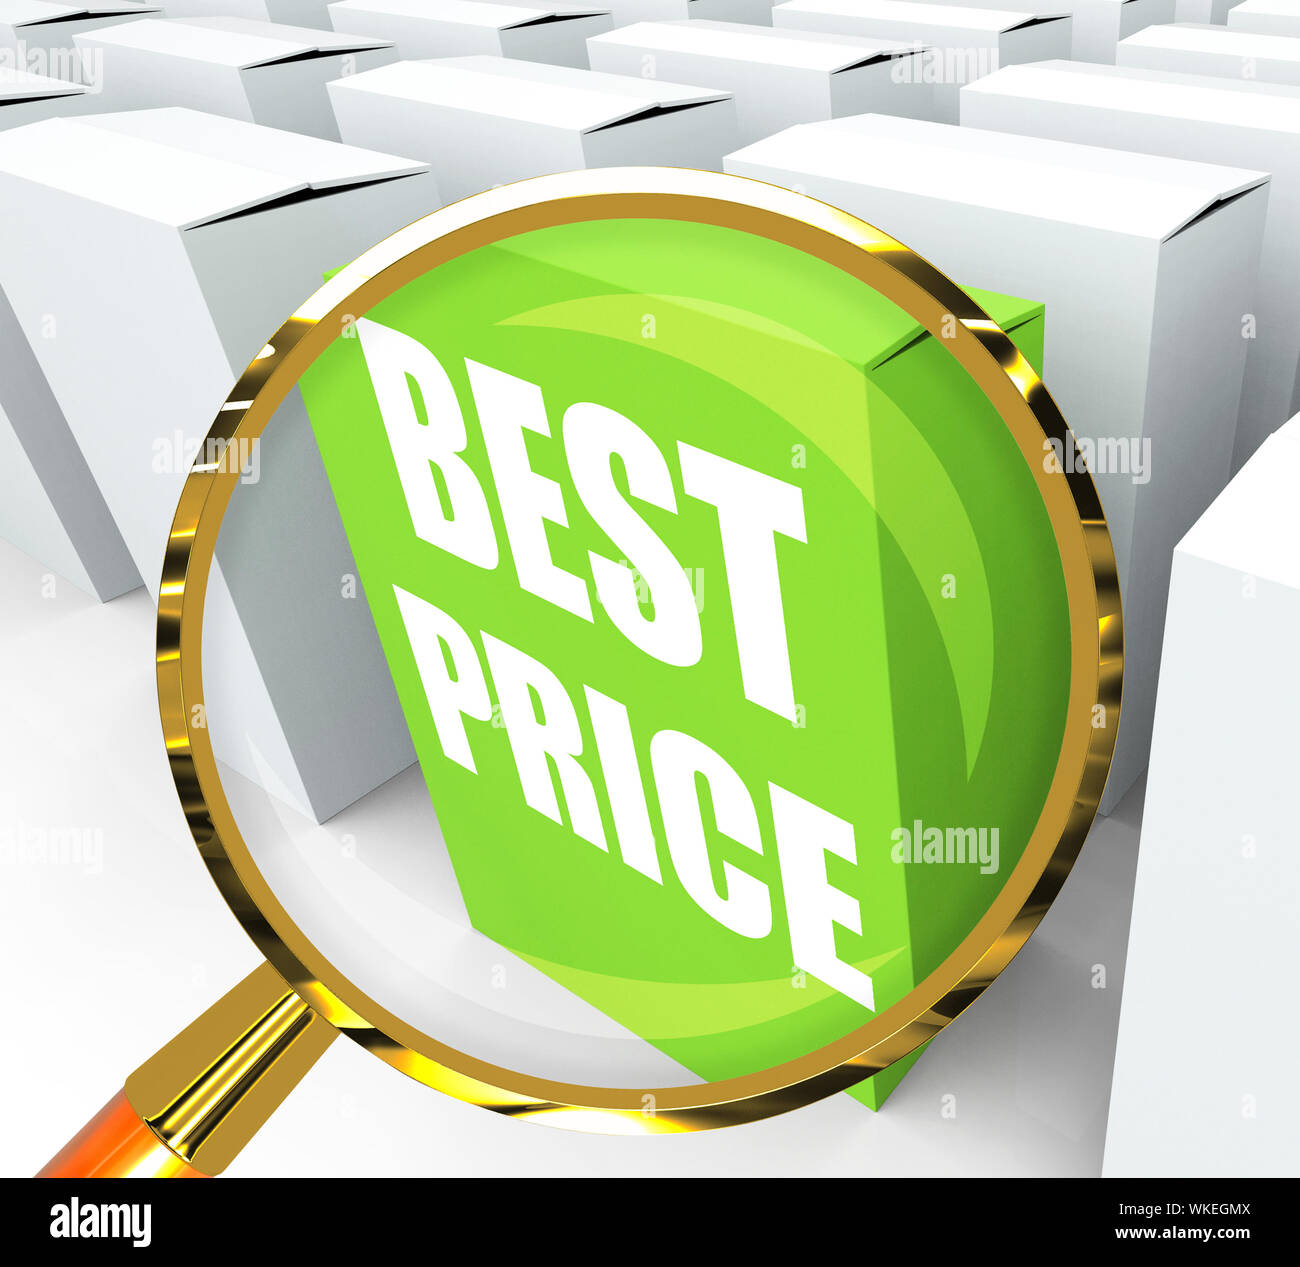 Mejor precio Ofertas y descuentos en representación de paquetes Fotografía  de stock - Alamy